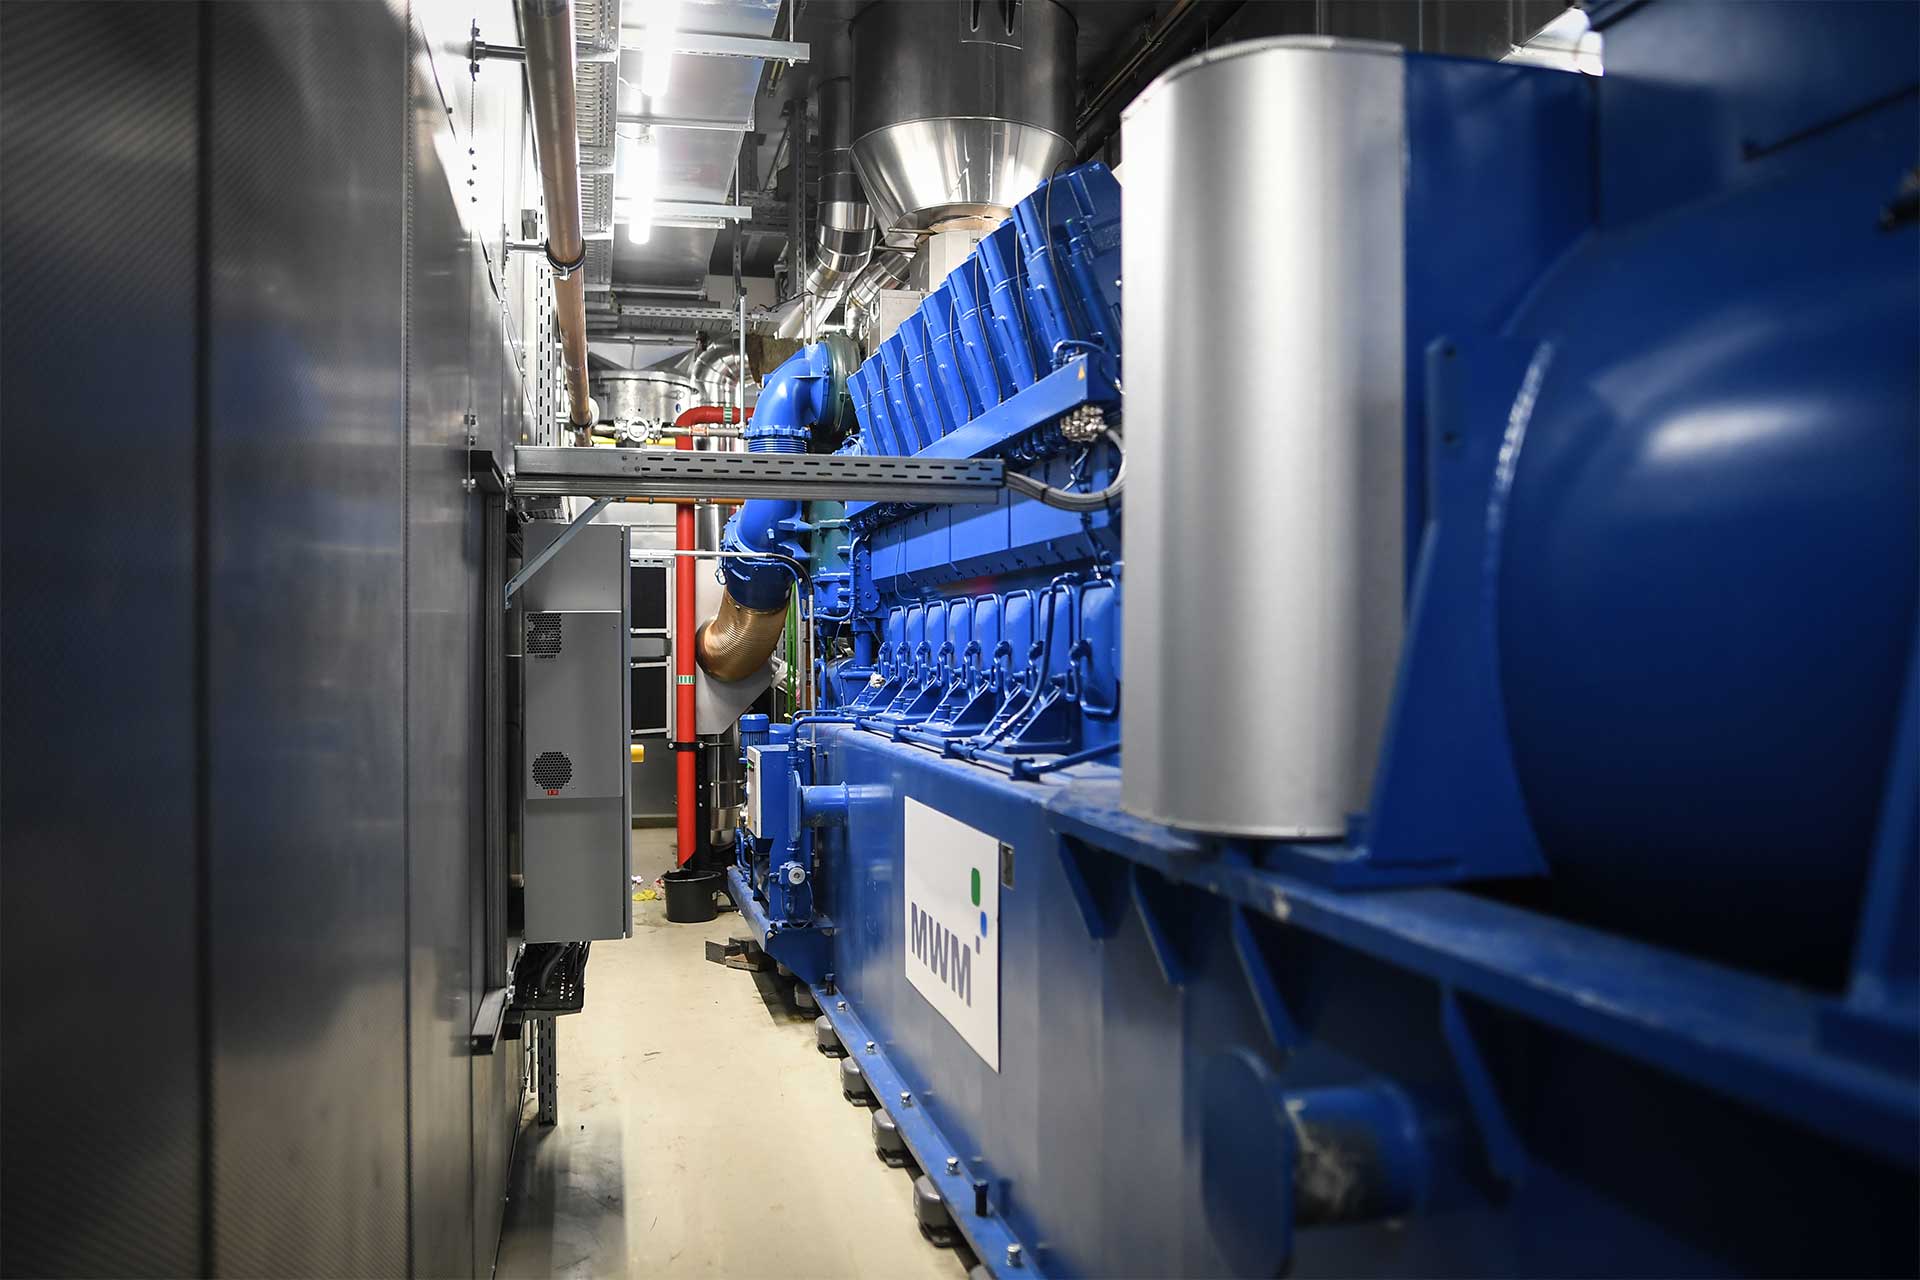 Die sieben MWM TCG 2032B V16 Gasmotoren der Stadtwerke Duisburg erzeugen flexibel Strom und Wärme für die Energie- und Fernwärmeversorgung der Stadt. (© Daniel Tomczak / DVV)